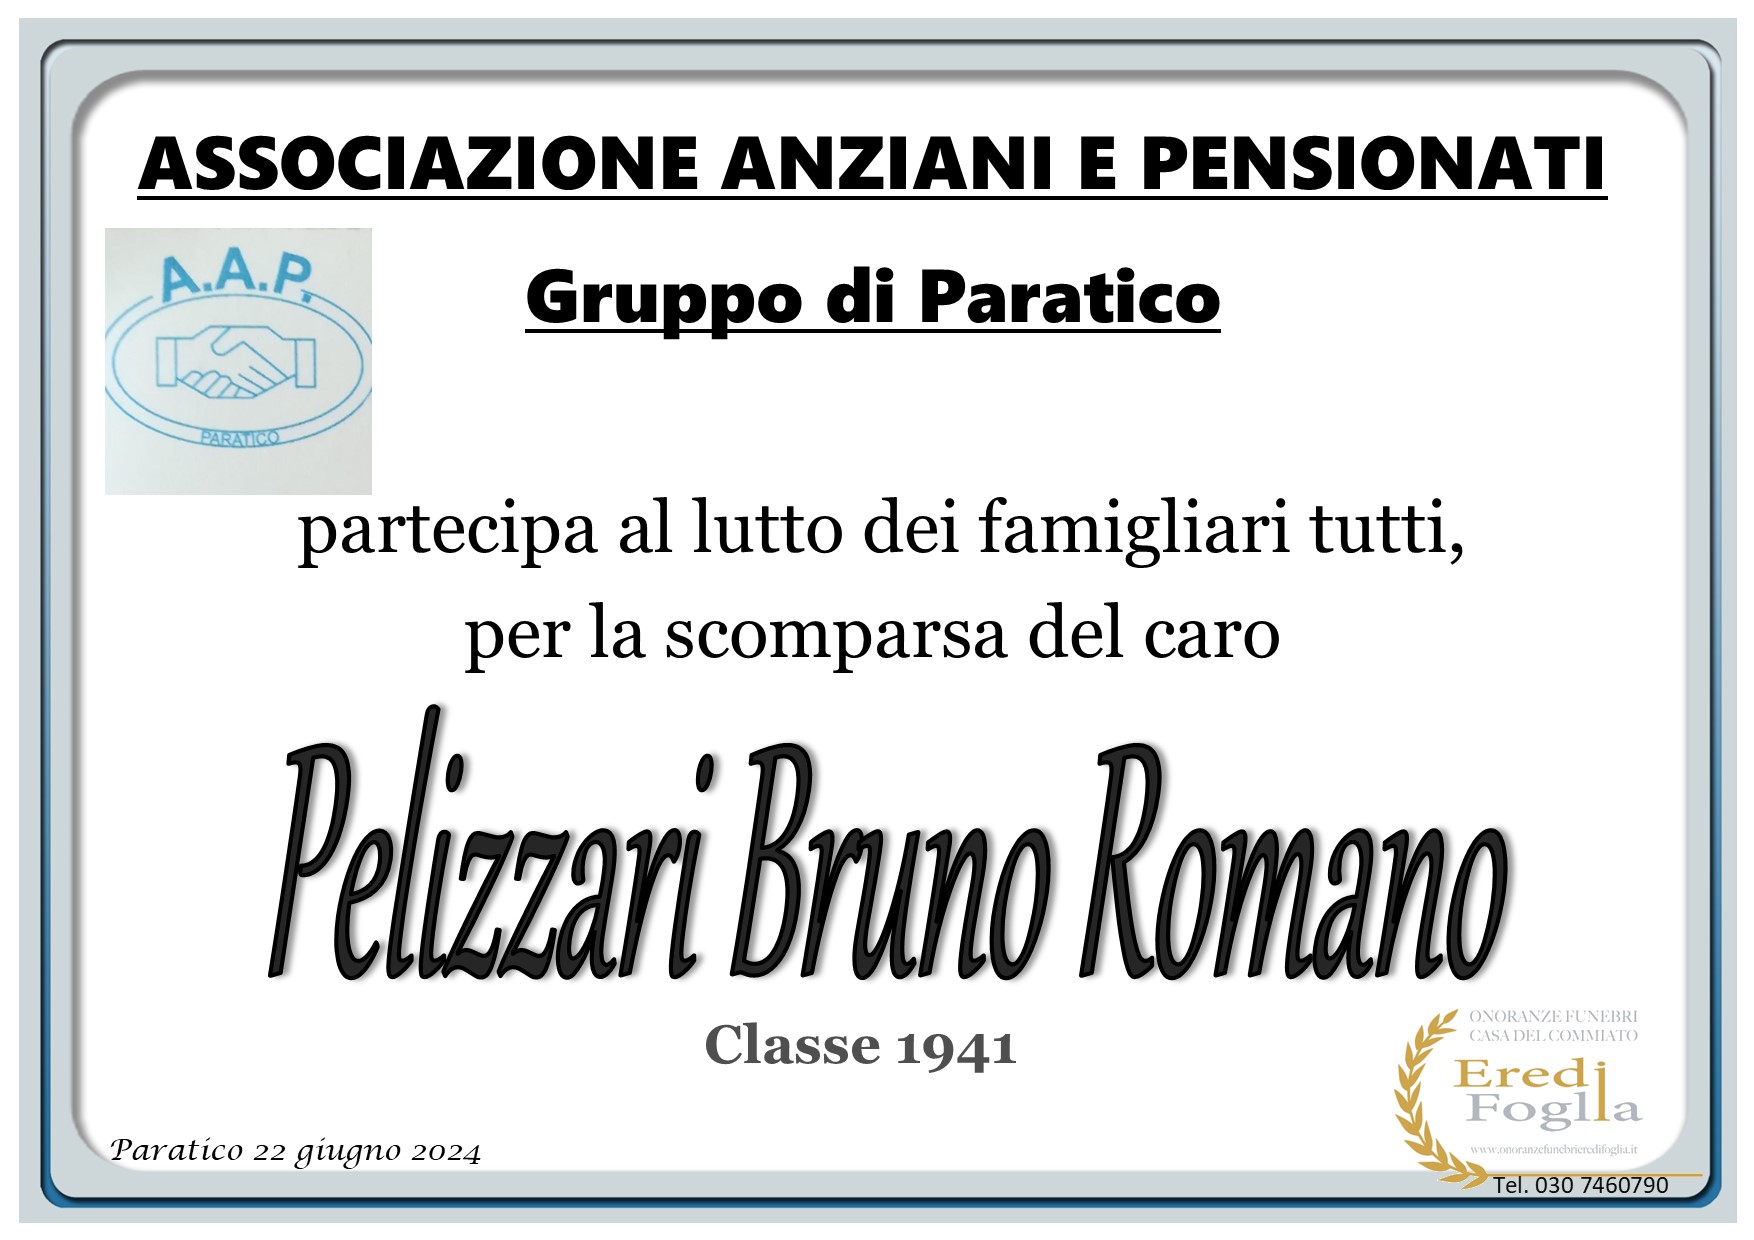 Pelizzari Bruno Romano